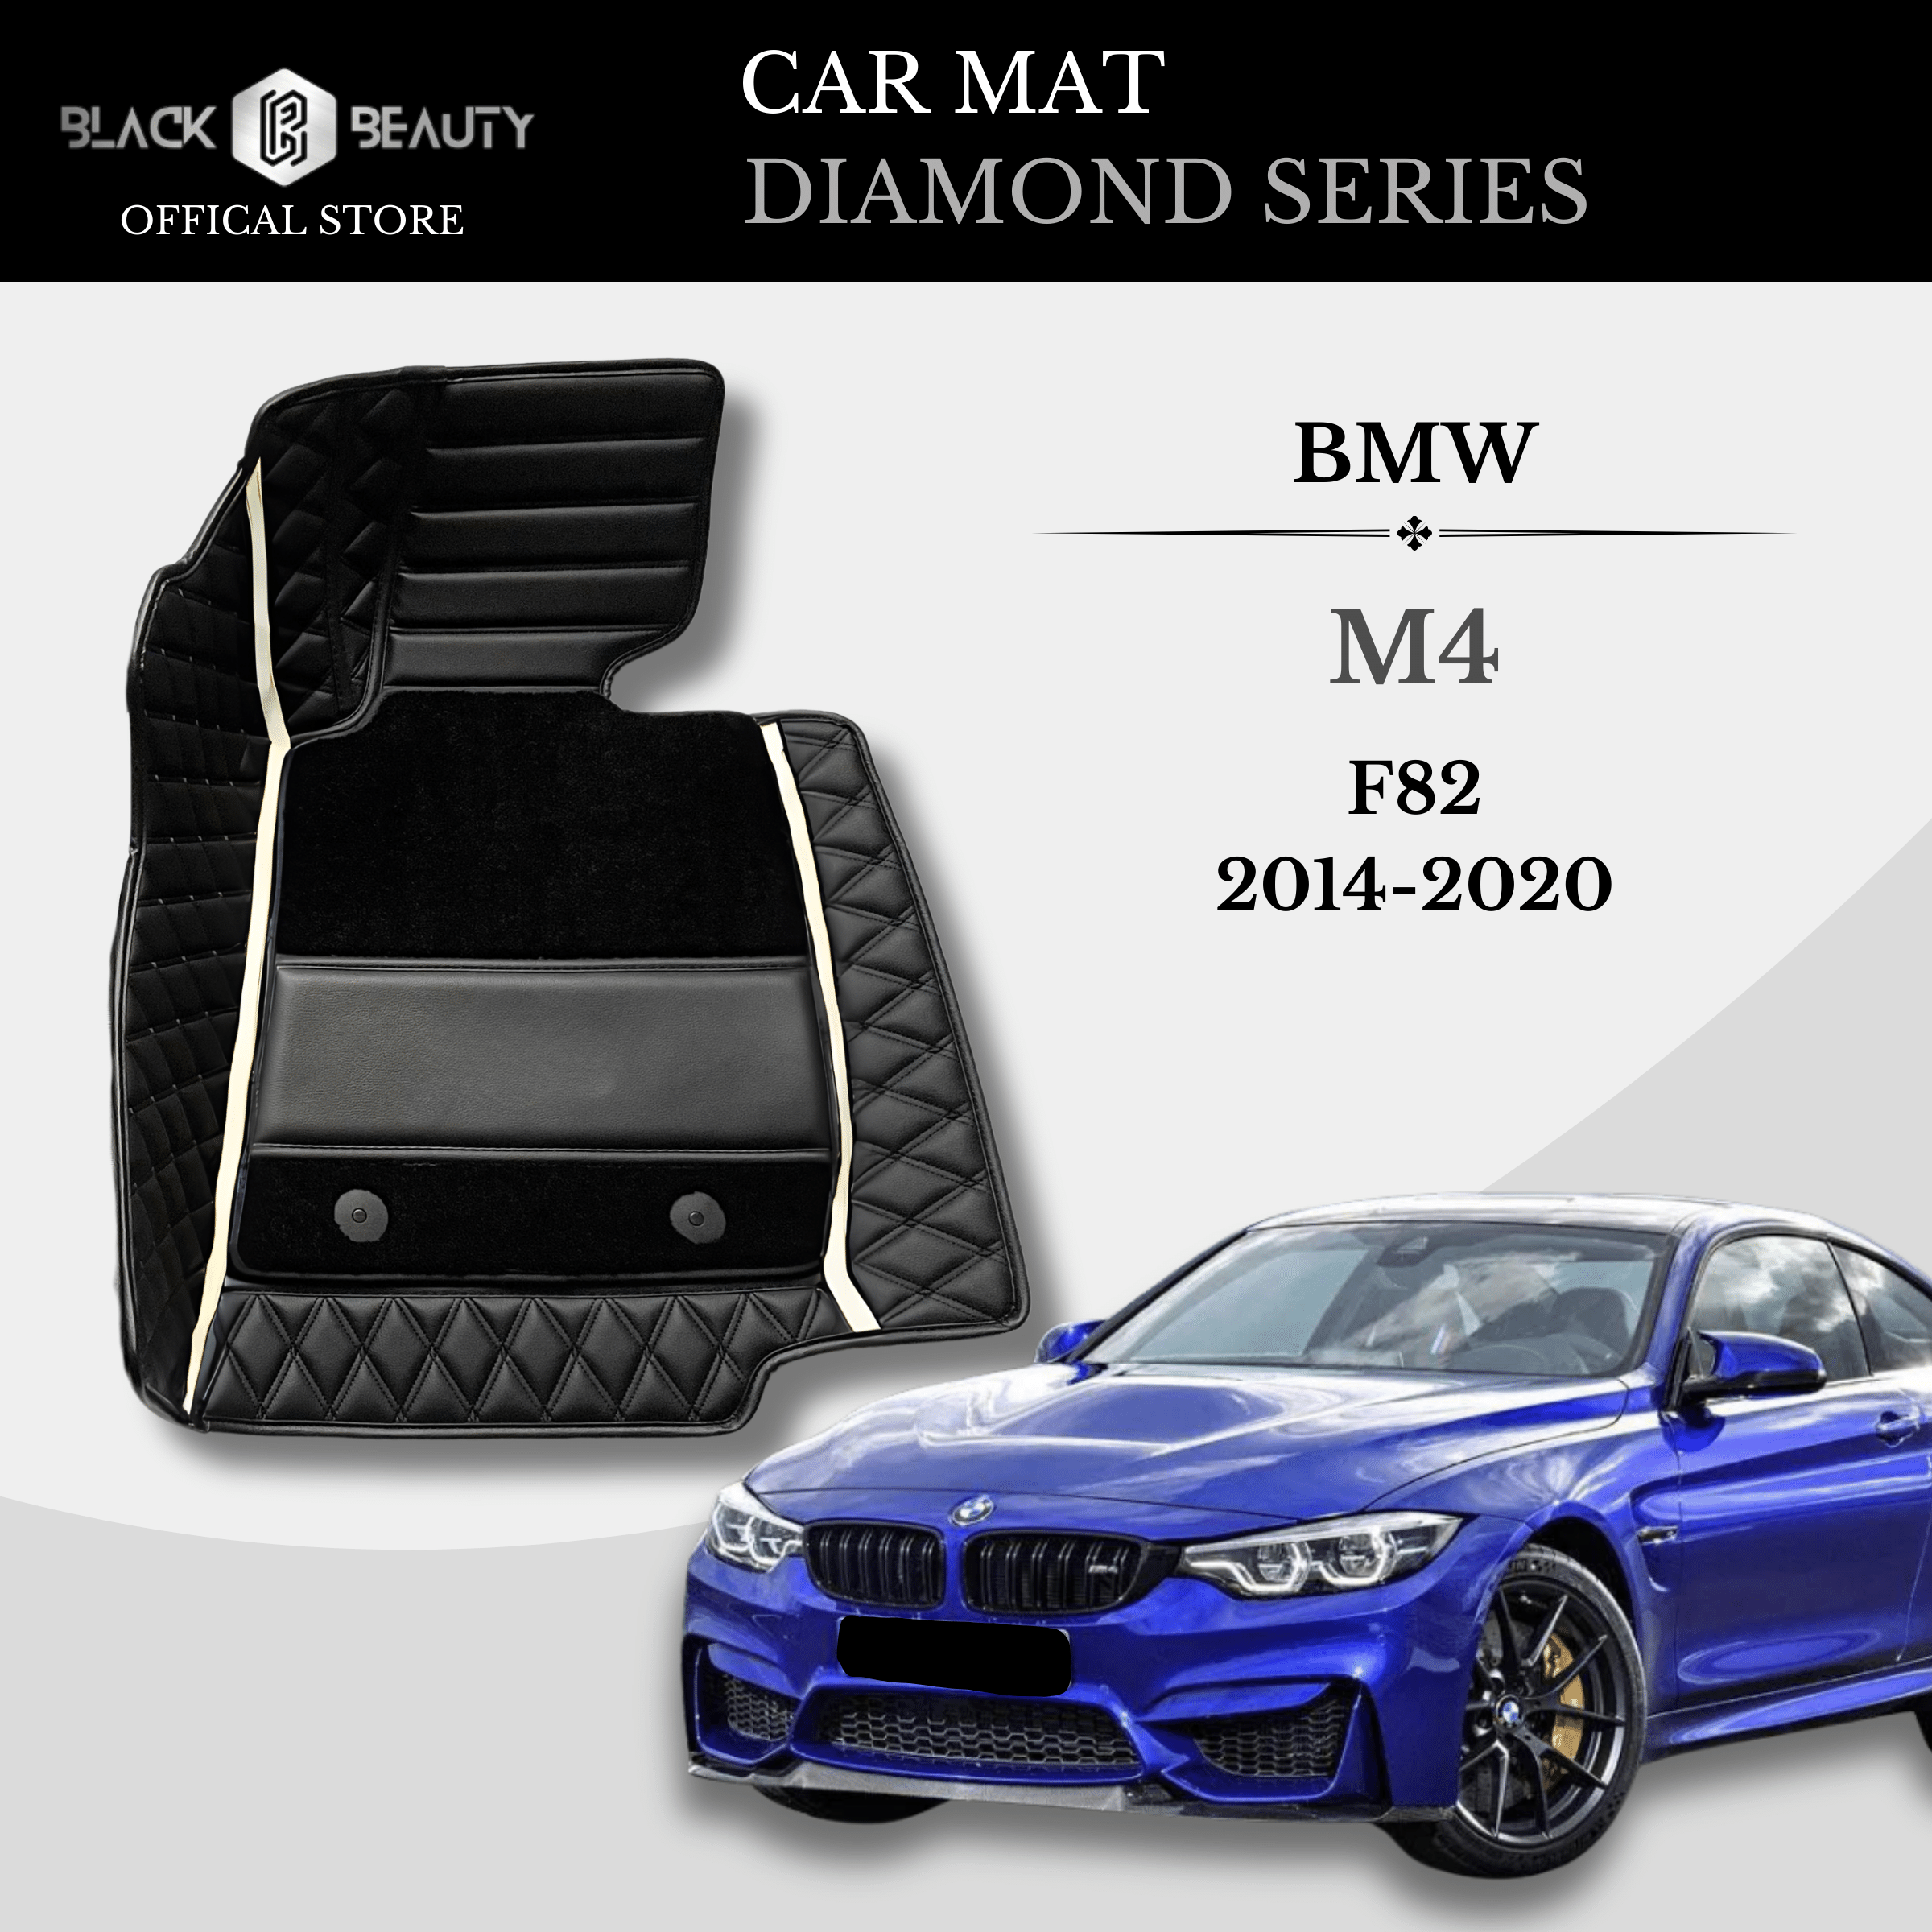 BMW M4 F82 (2014-2020) -Diamond Series Car Mat